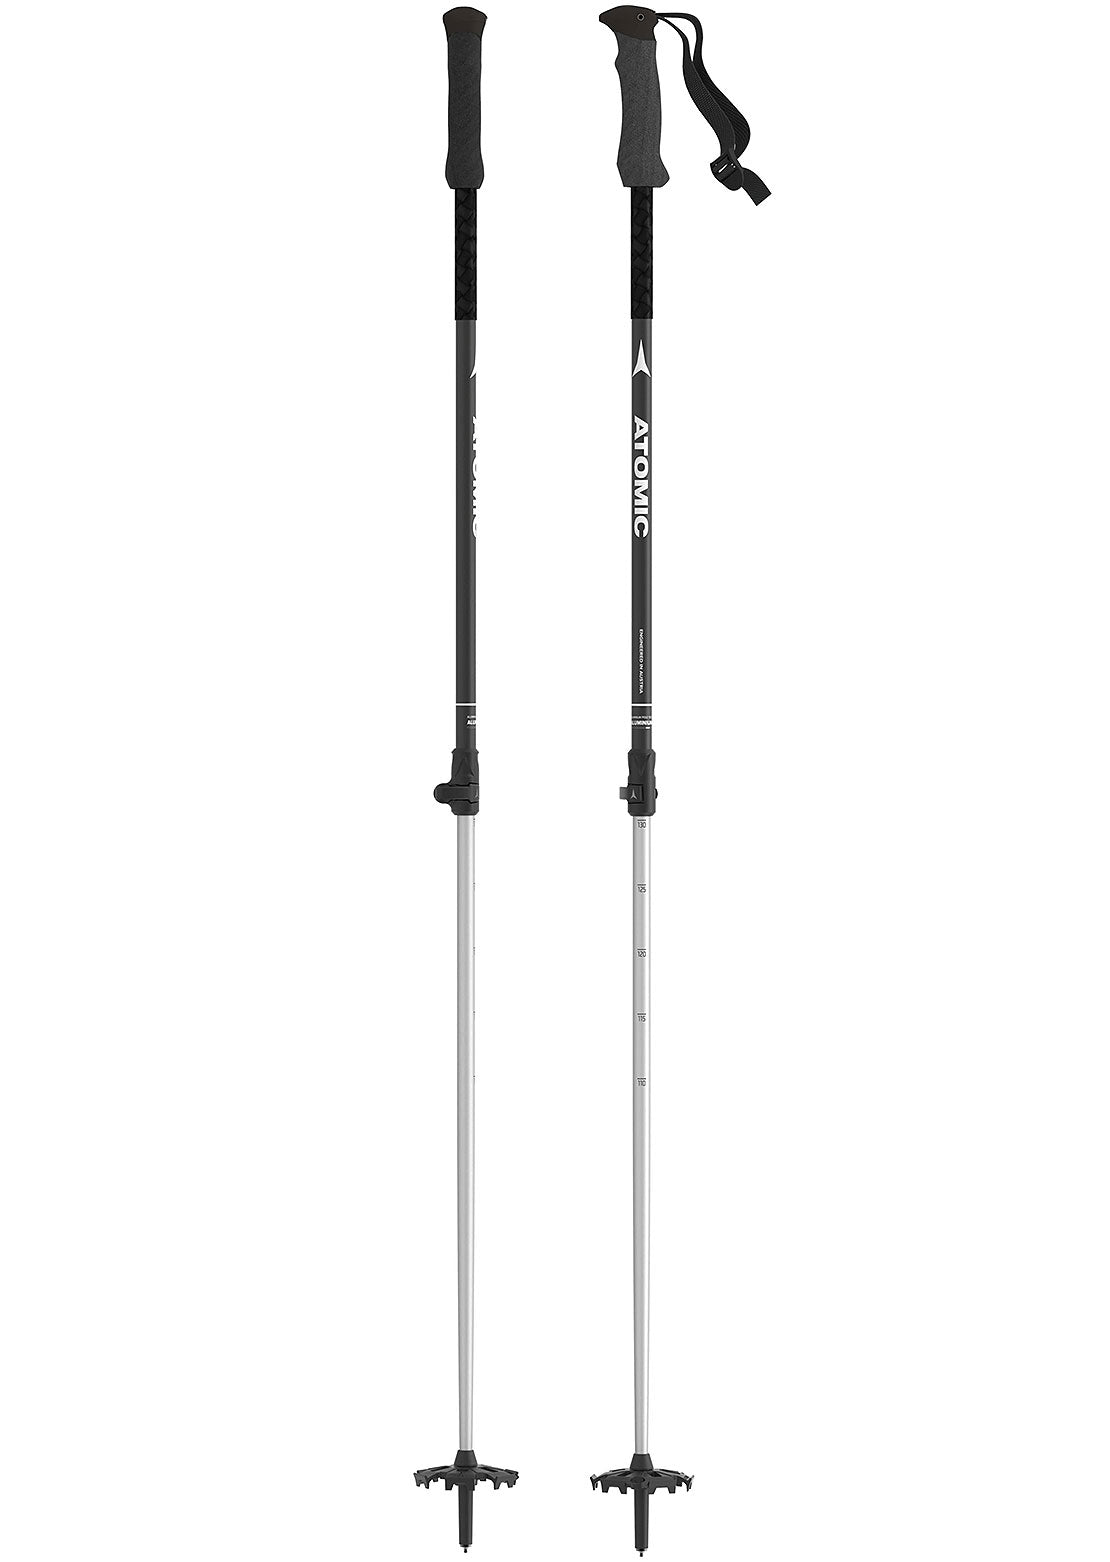 Atomic Unisex BCT Touring Ski Poles Black/Silver